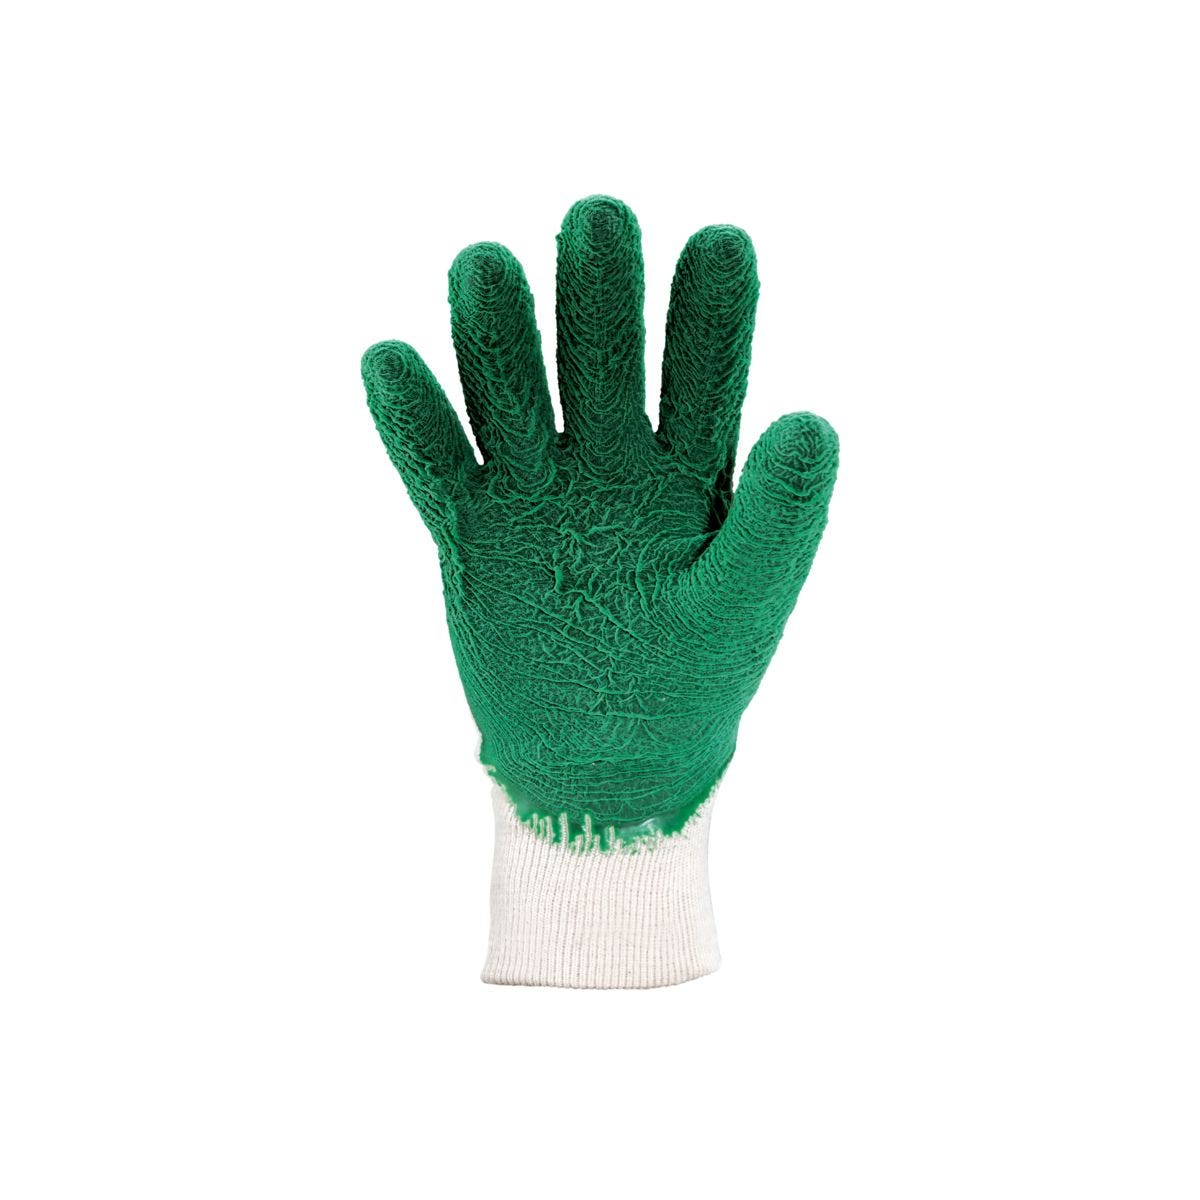 Gants latex crépé vert qualité supérieure - COVERGUARD - Taille S-7 1